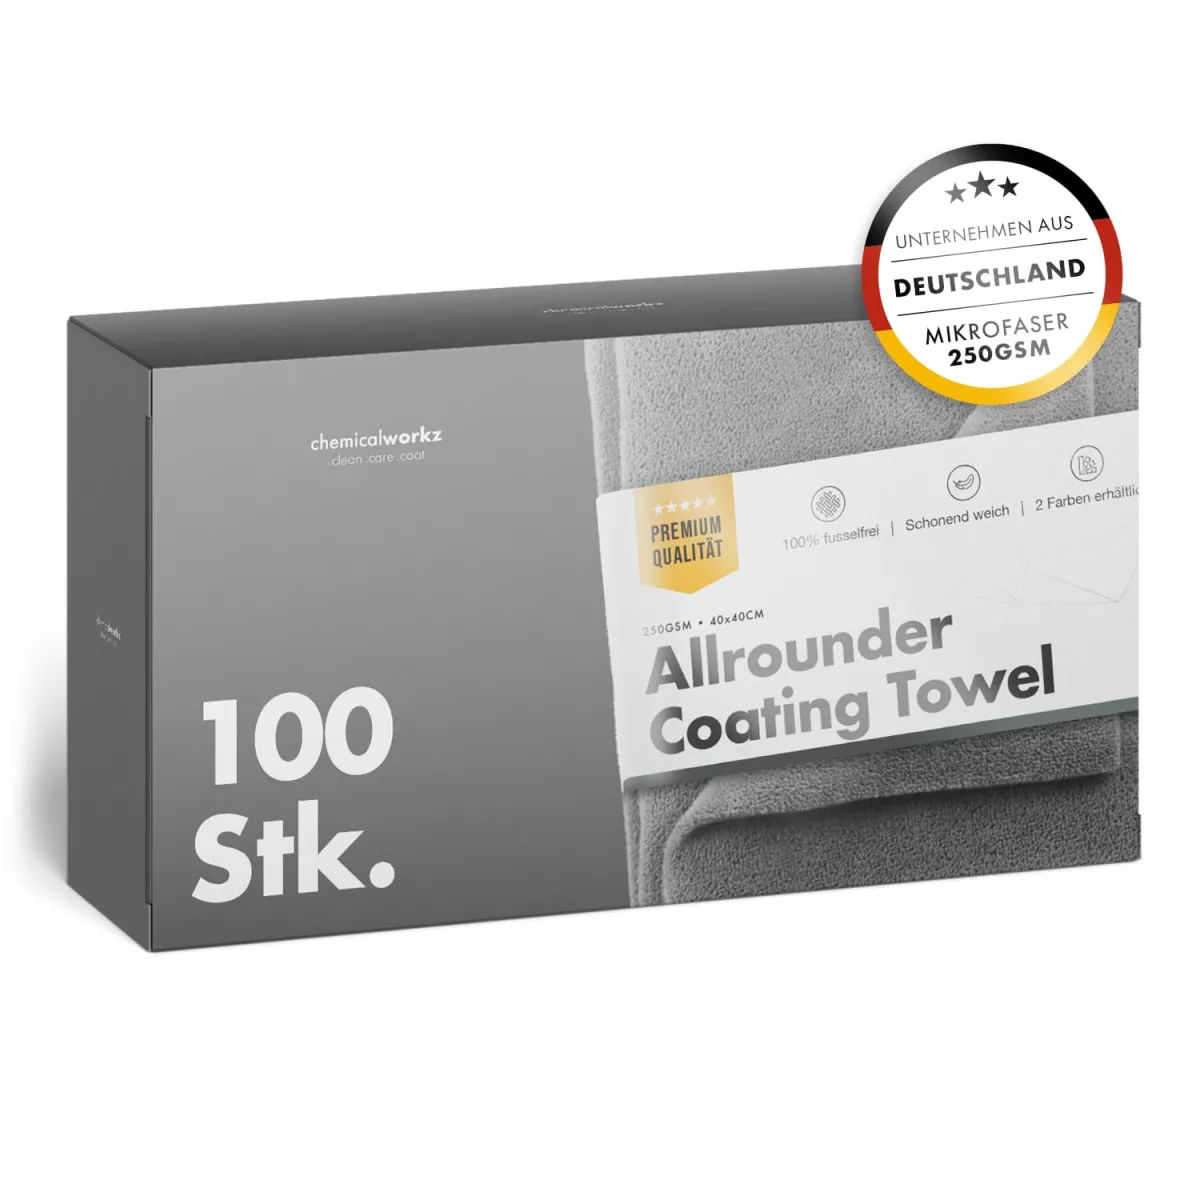 Allrounder Coating Towel Türkis 100 Stk.